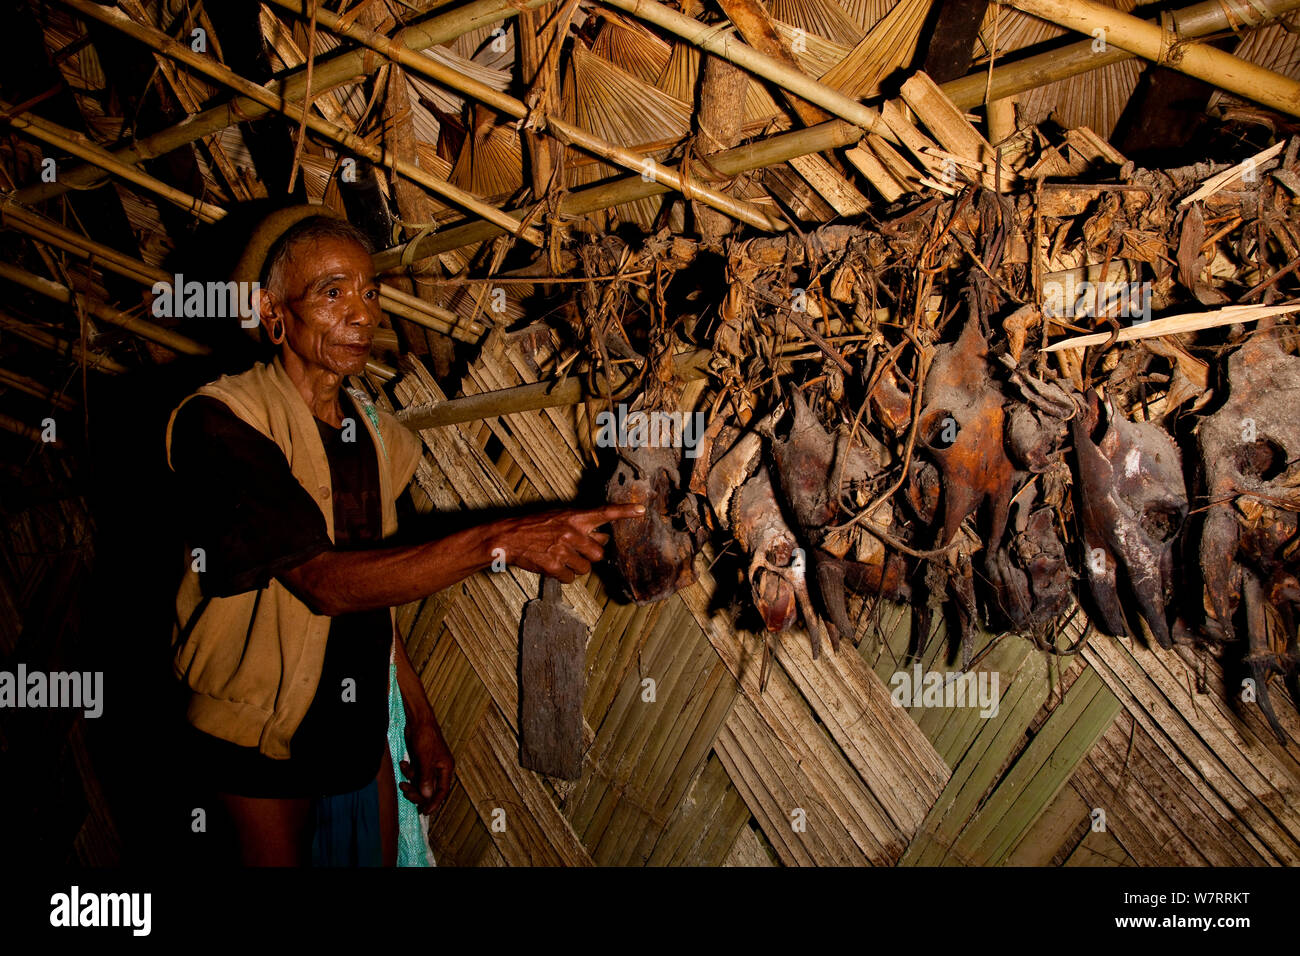 Wancho homme pointant à crânes d'animaux sauvages à gauche plus de fêtes rituelles accrochées au plafond d'une hutte, de l'Arunachal Pradesh, Inde, 2008. Banque D'Images